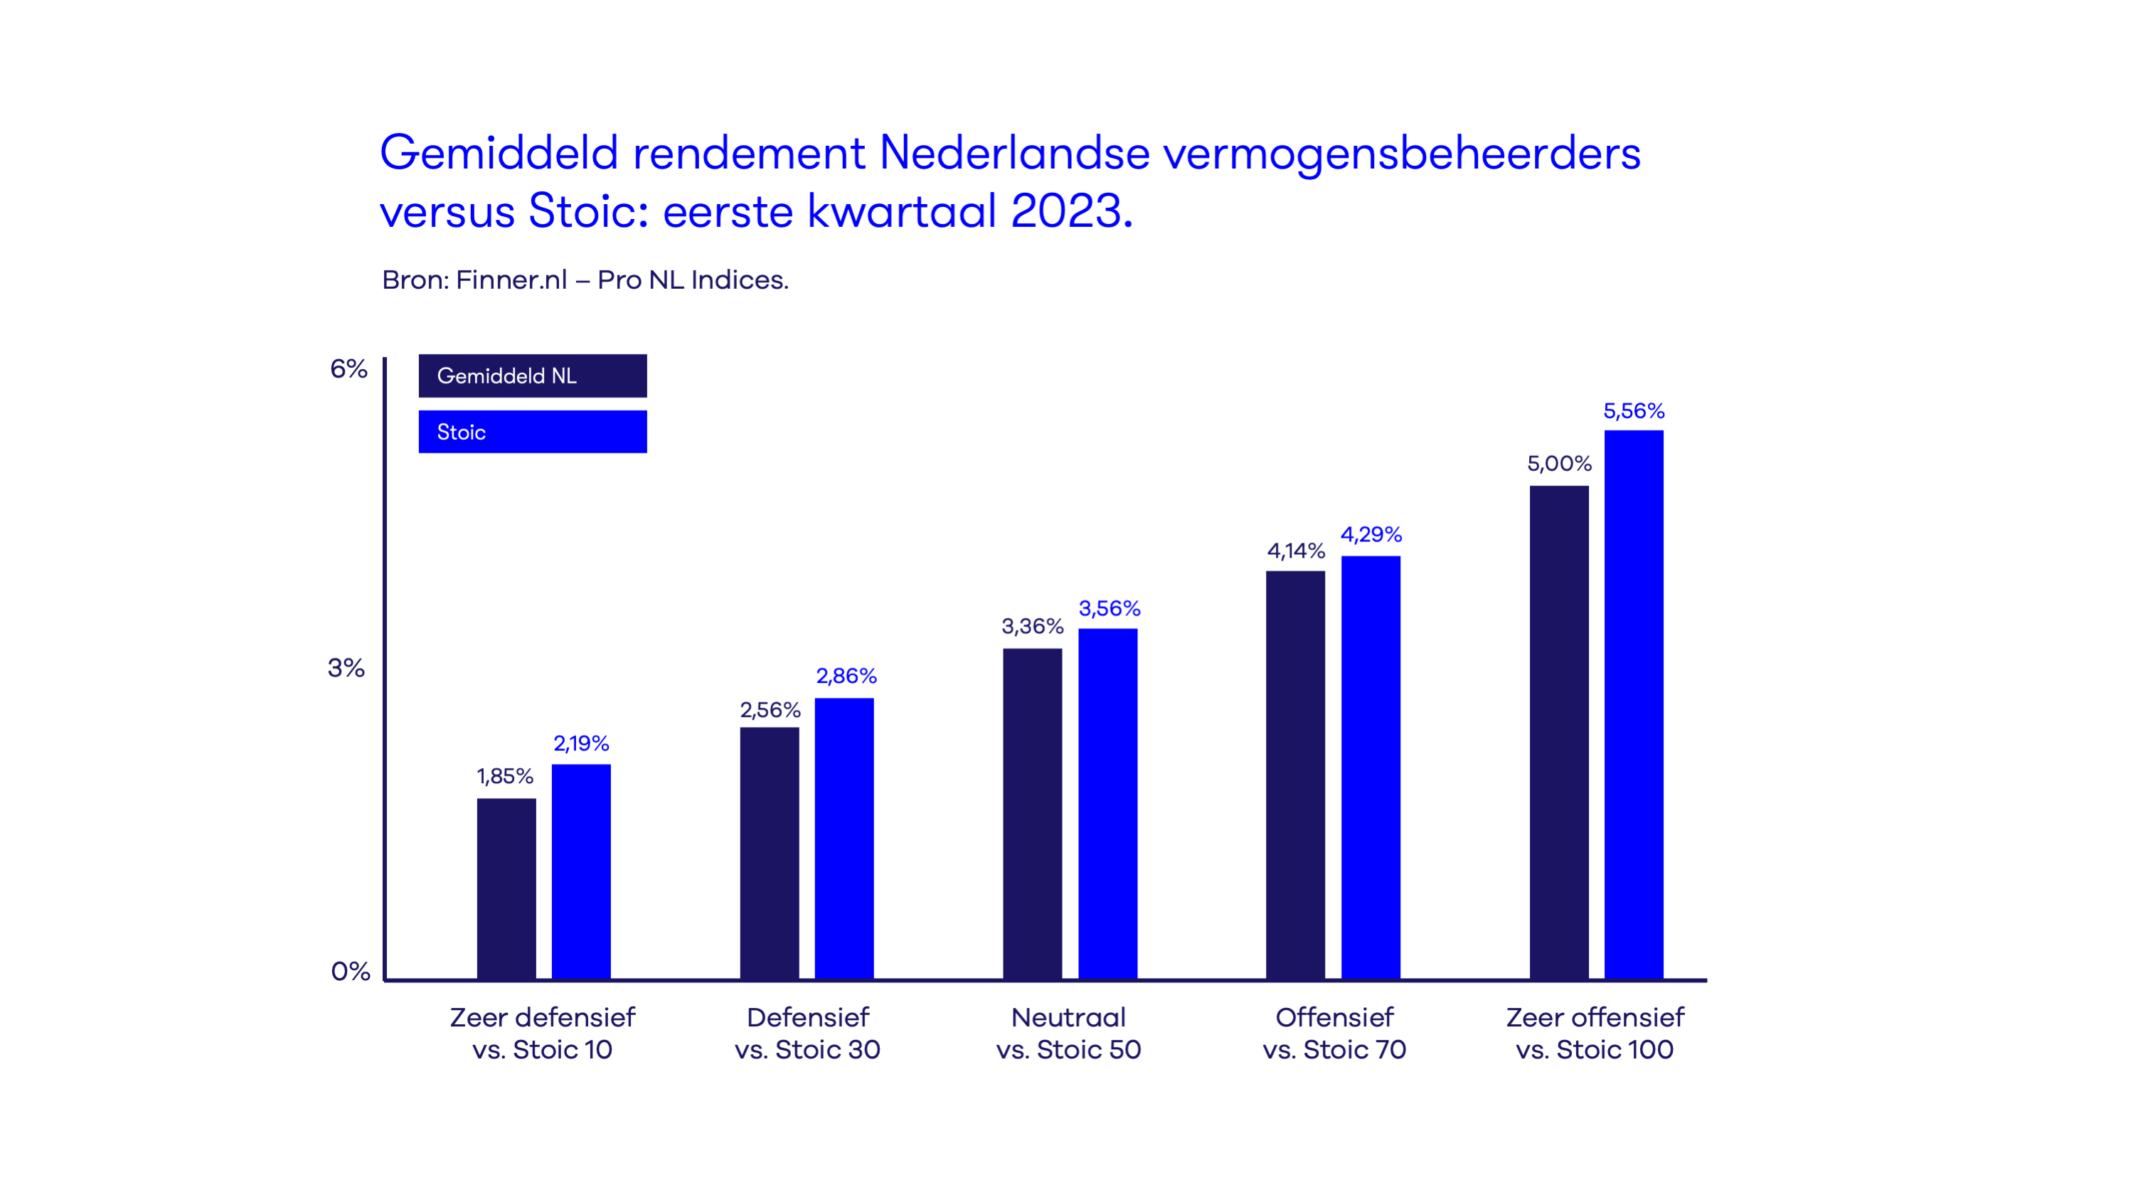 Gemiddeld rendement Nederlandse vermogesnbeheerders vs. Stoic.